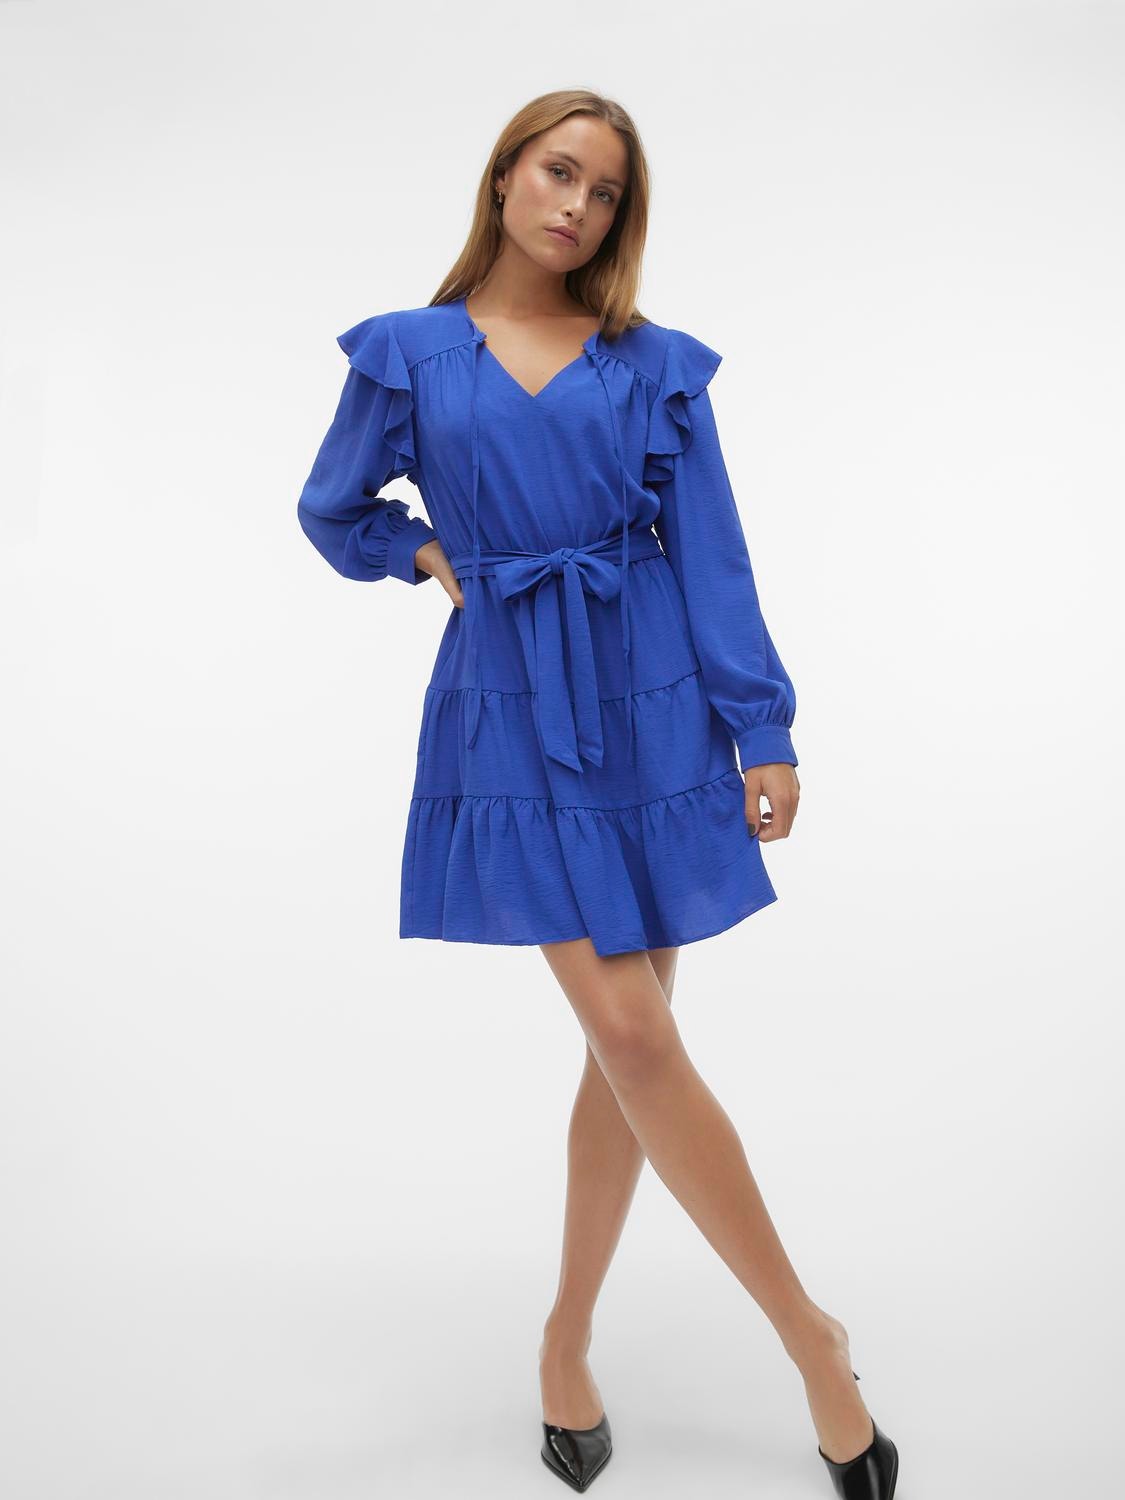 Vero Moda VMGREENLEE Short dress -Bluing - 10295626